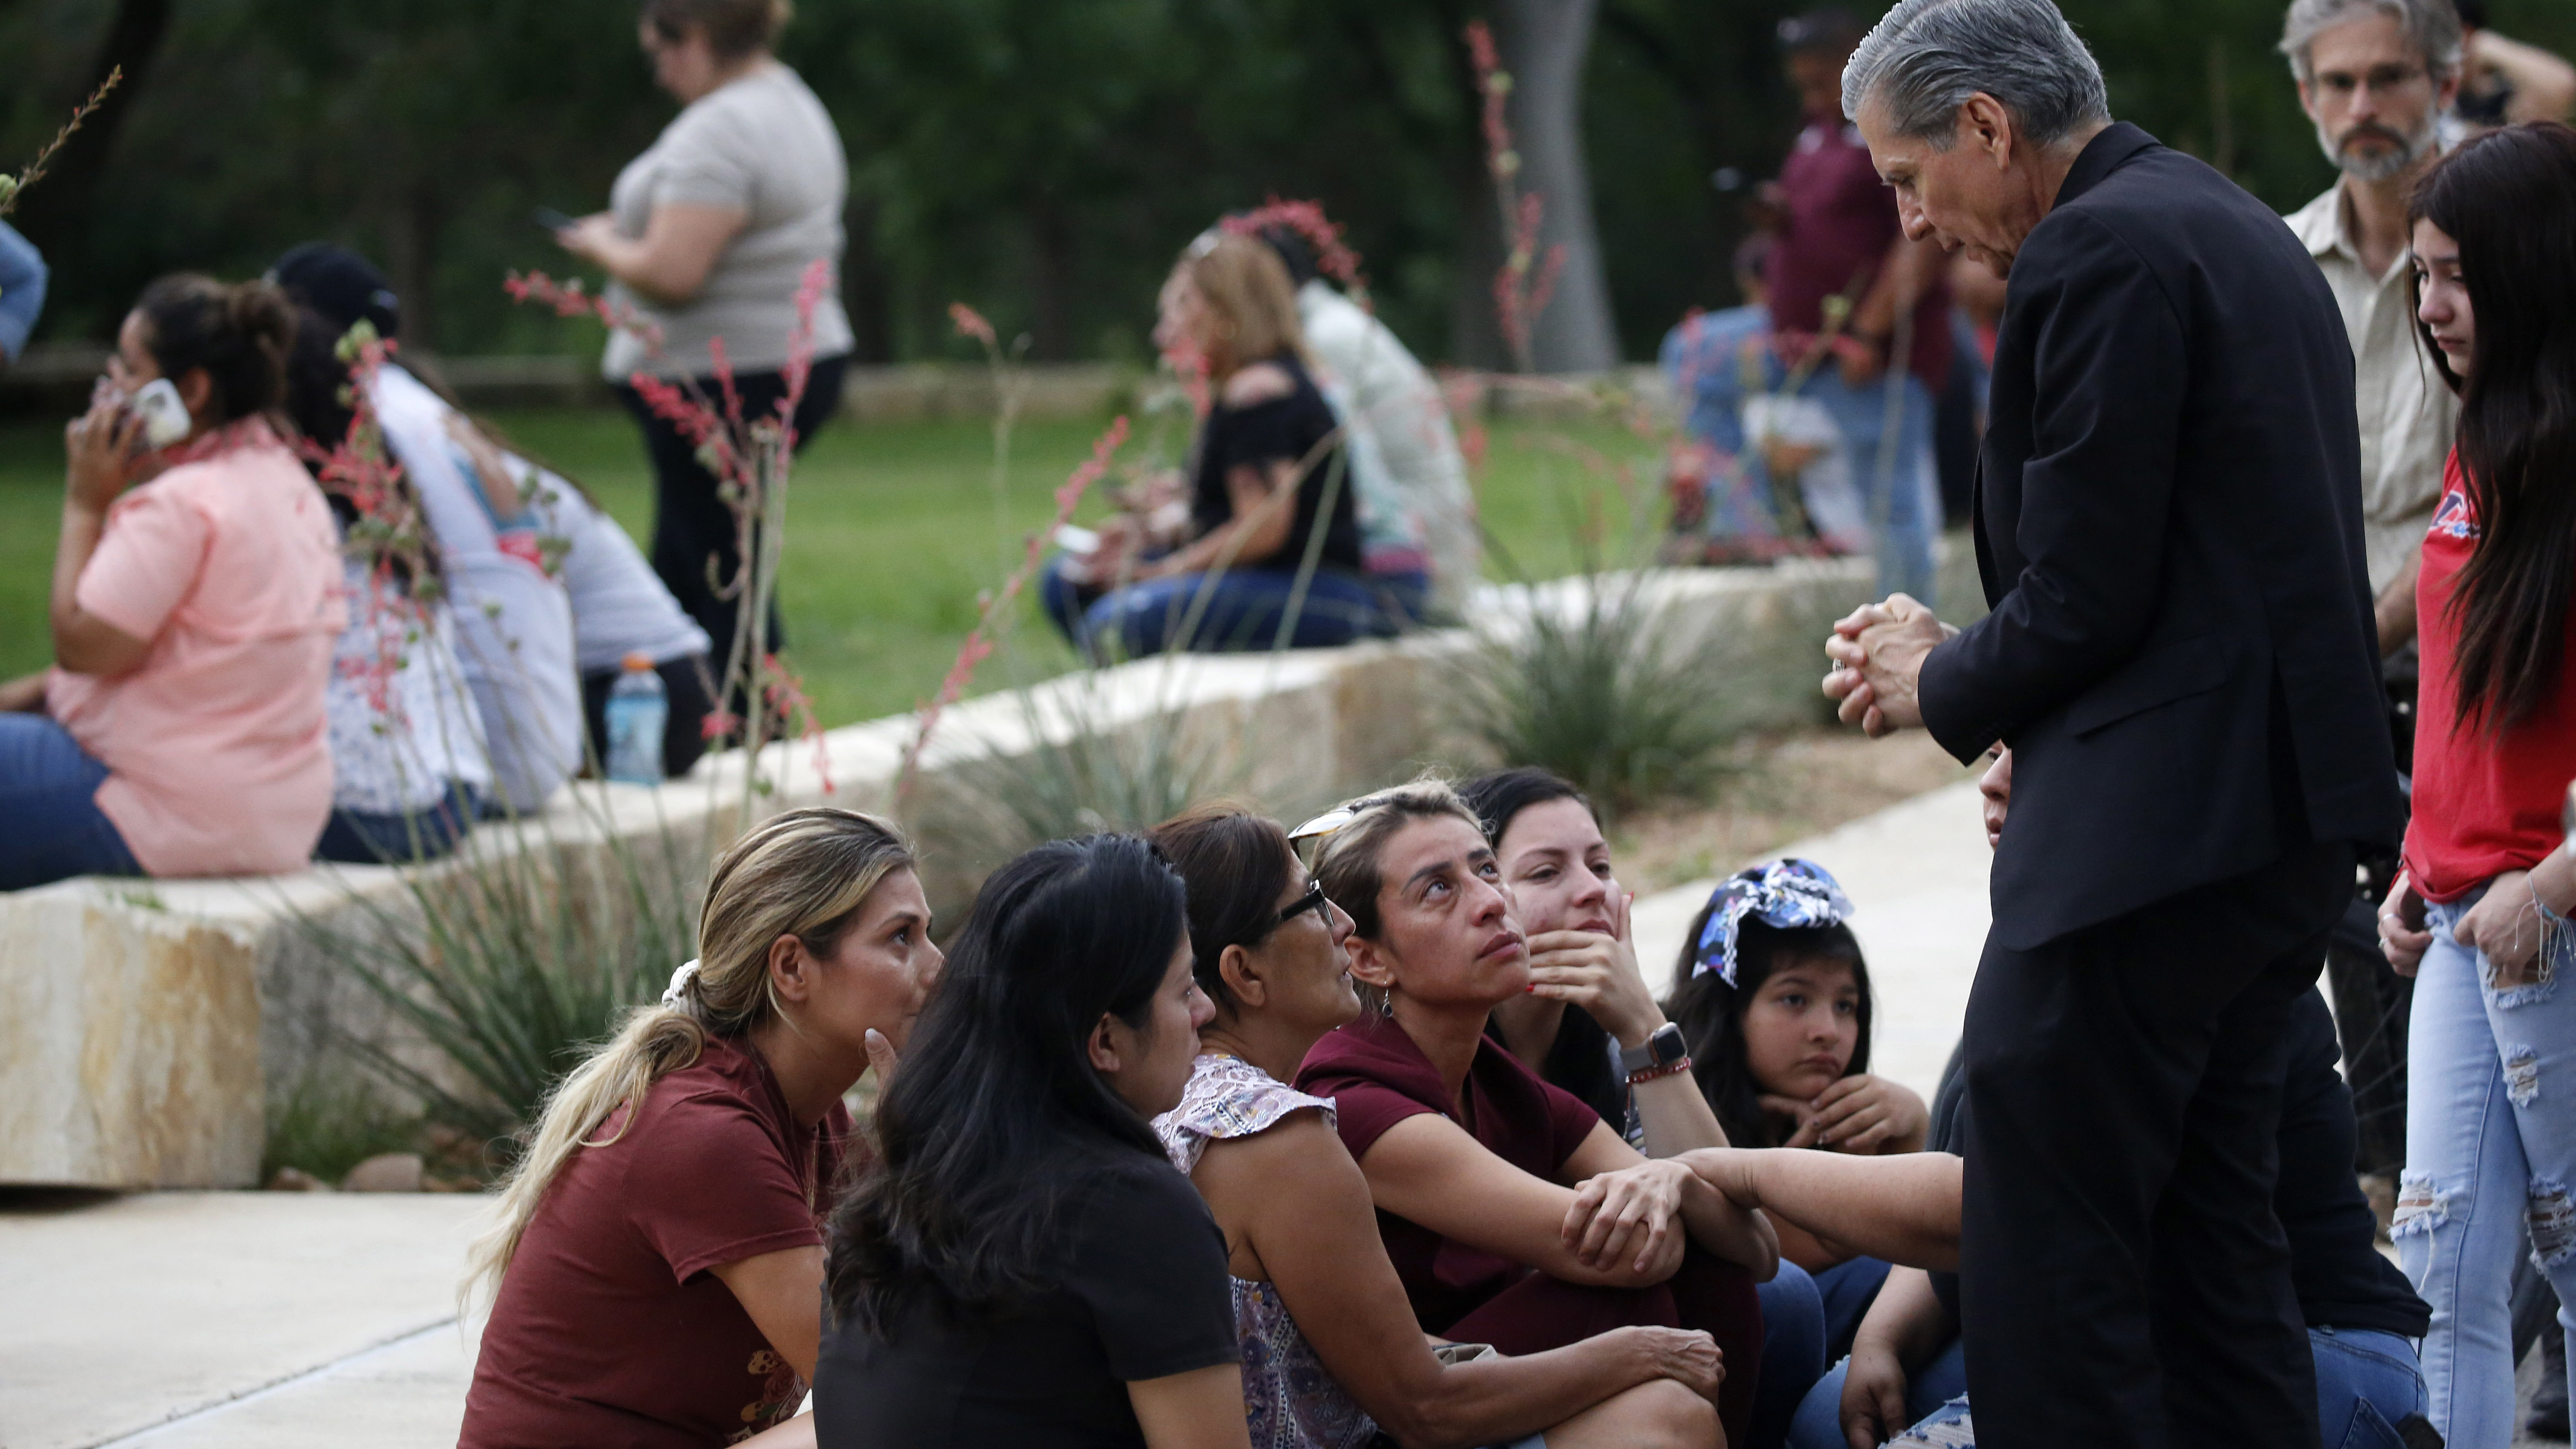 El arzobispo de San Antonio, Gustavo García-Siller, a la derecha, consuela a las familias afuera del Centro Cívico luego de un tiroteo mortal en la Escuela Primaria Robb en Uvalde, Texas.